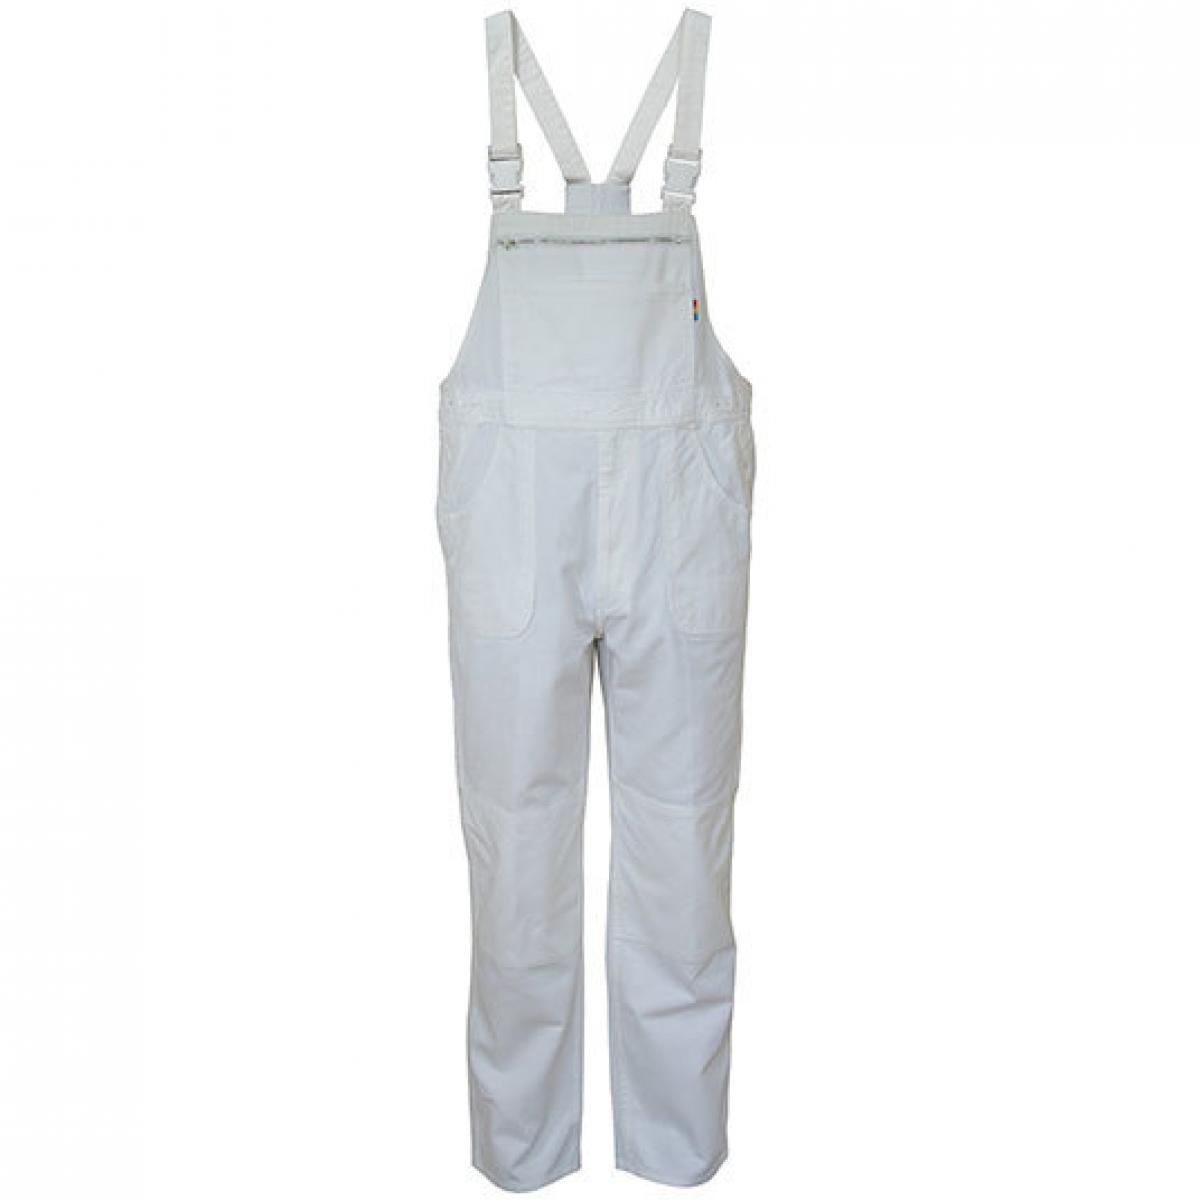 Hersteller: Carson Classic Workwear Herstellernummer: KTH726 Artikelbezeichnung: Herren Classic Bib Pants Latzhose / Bei 60 Grad waschbar Farbe: White